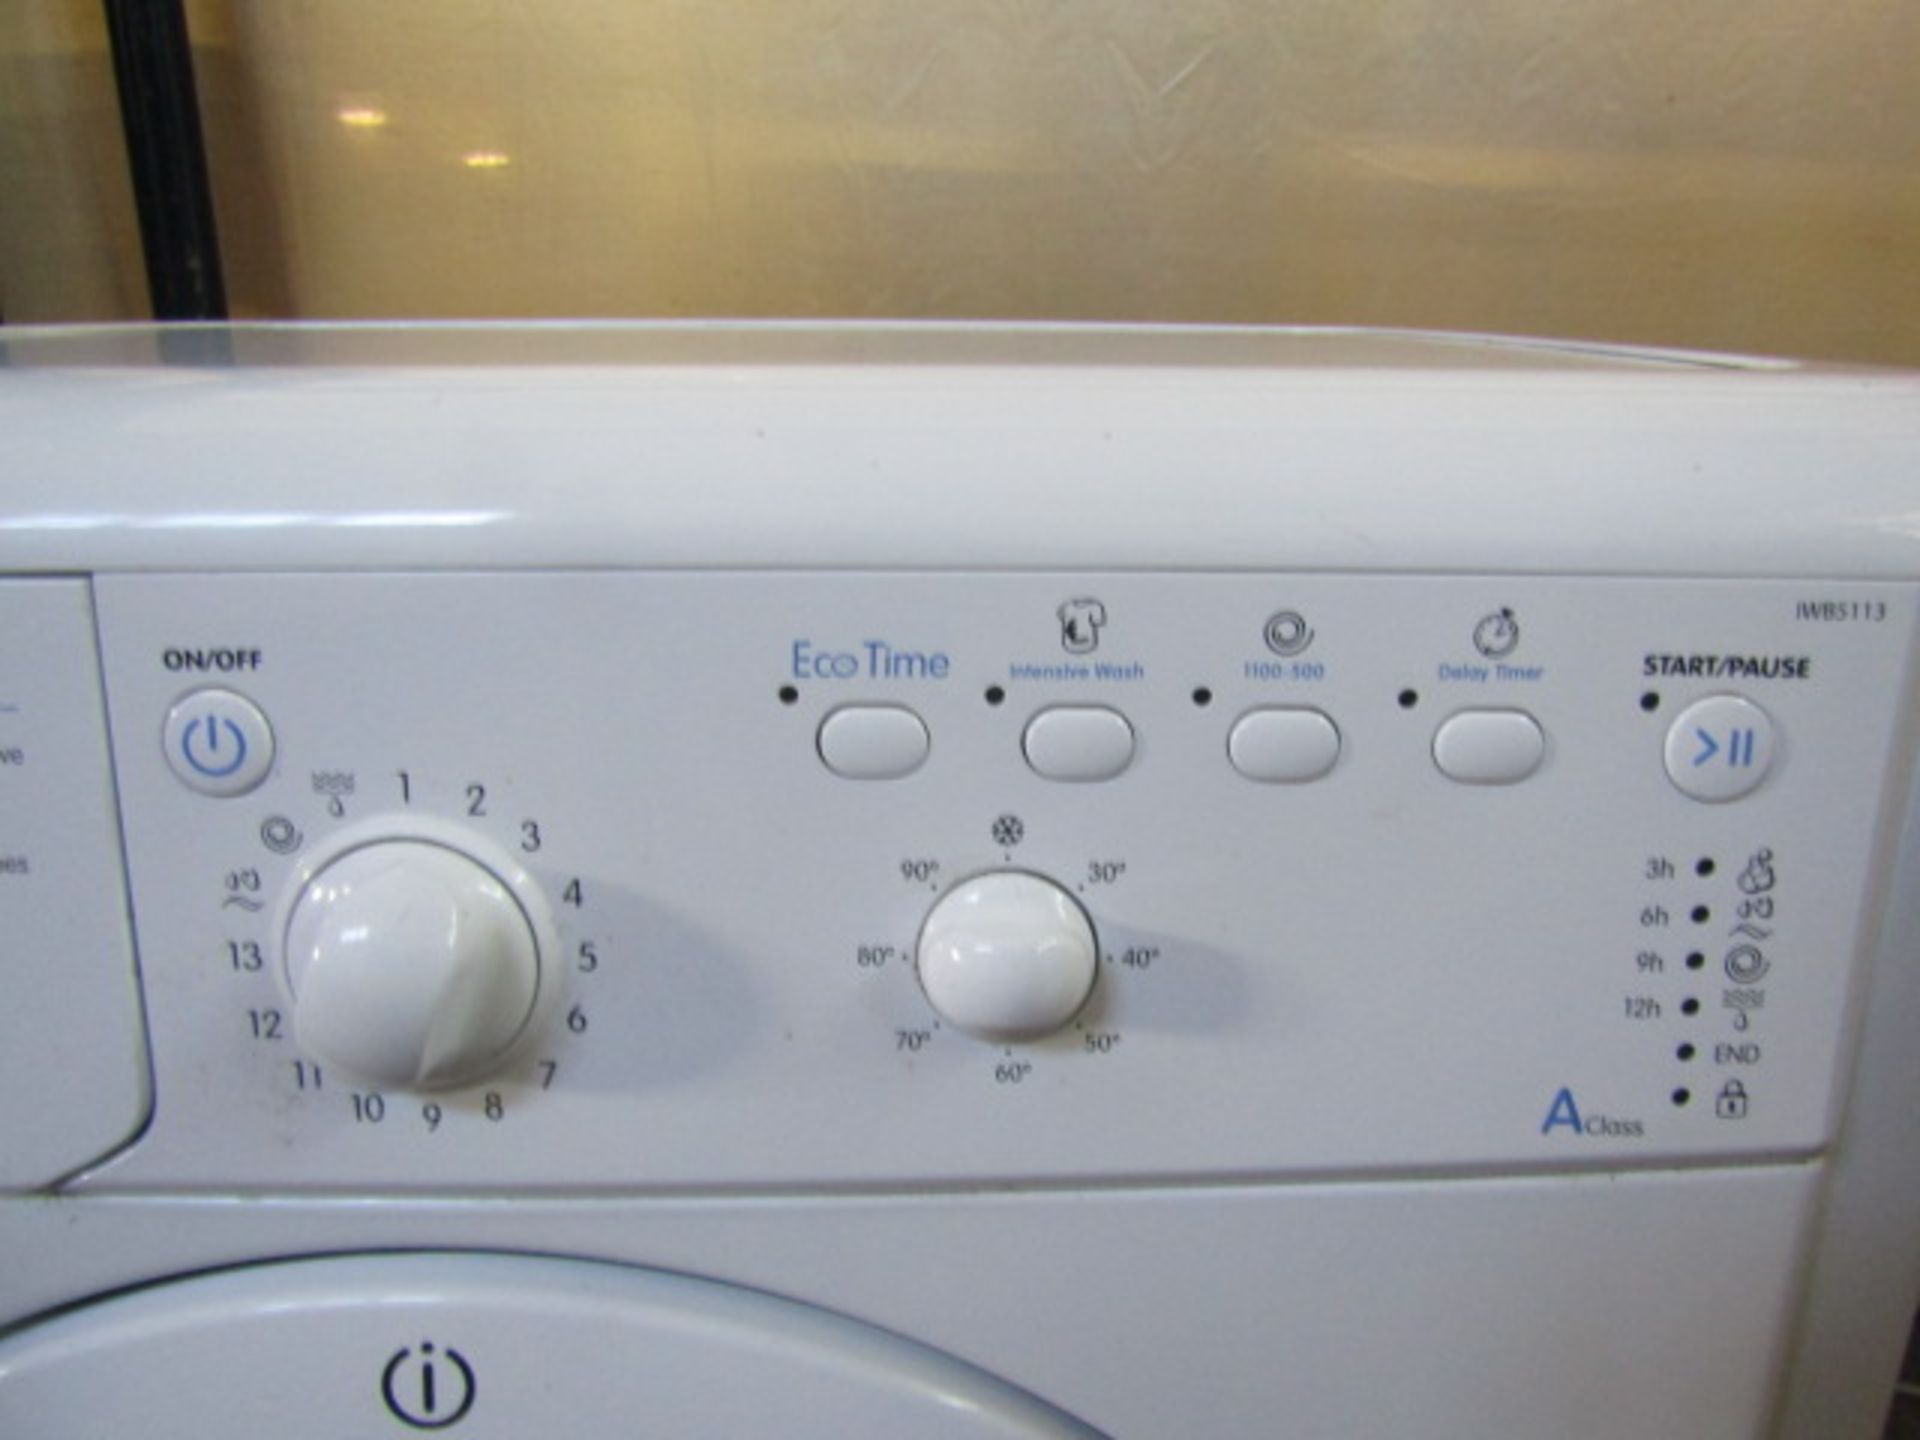 Indesit washing machine - Image 3 of 3